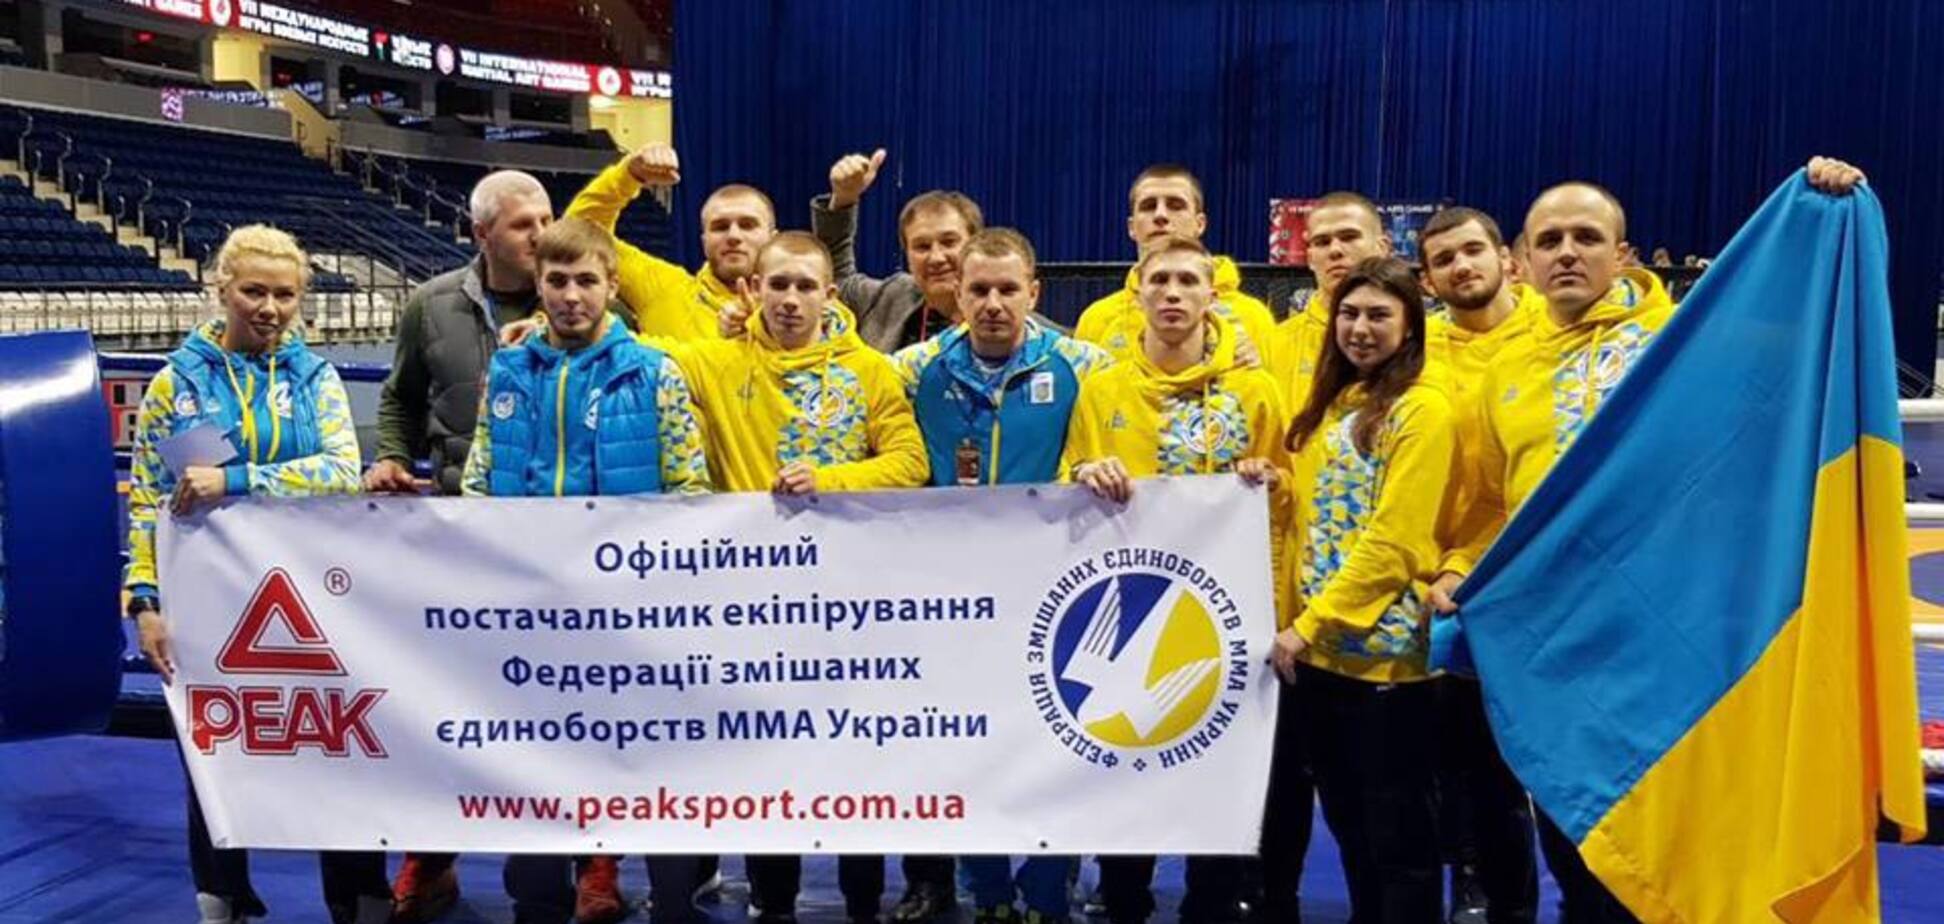 Дев'ять медалей! Збірна України чудово виступила на чемпіонаті світу з ММА